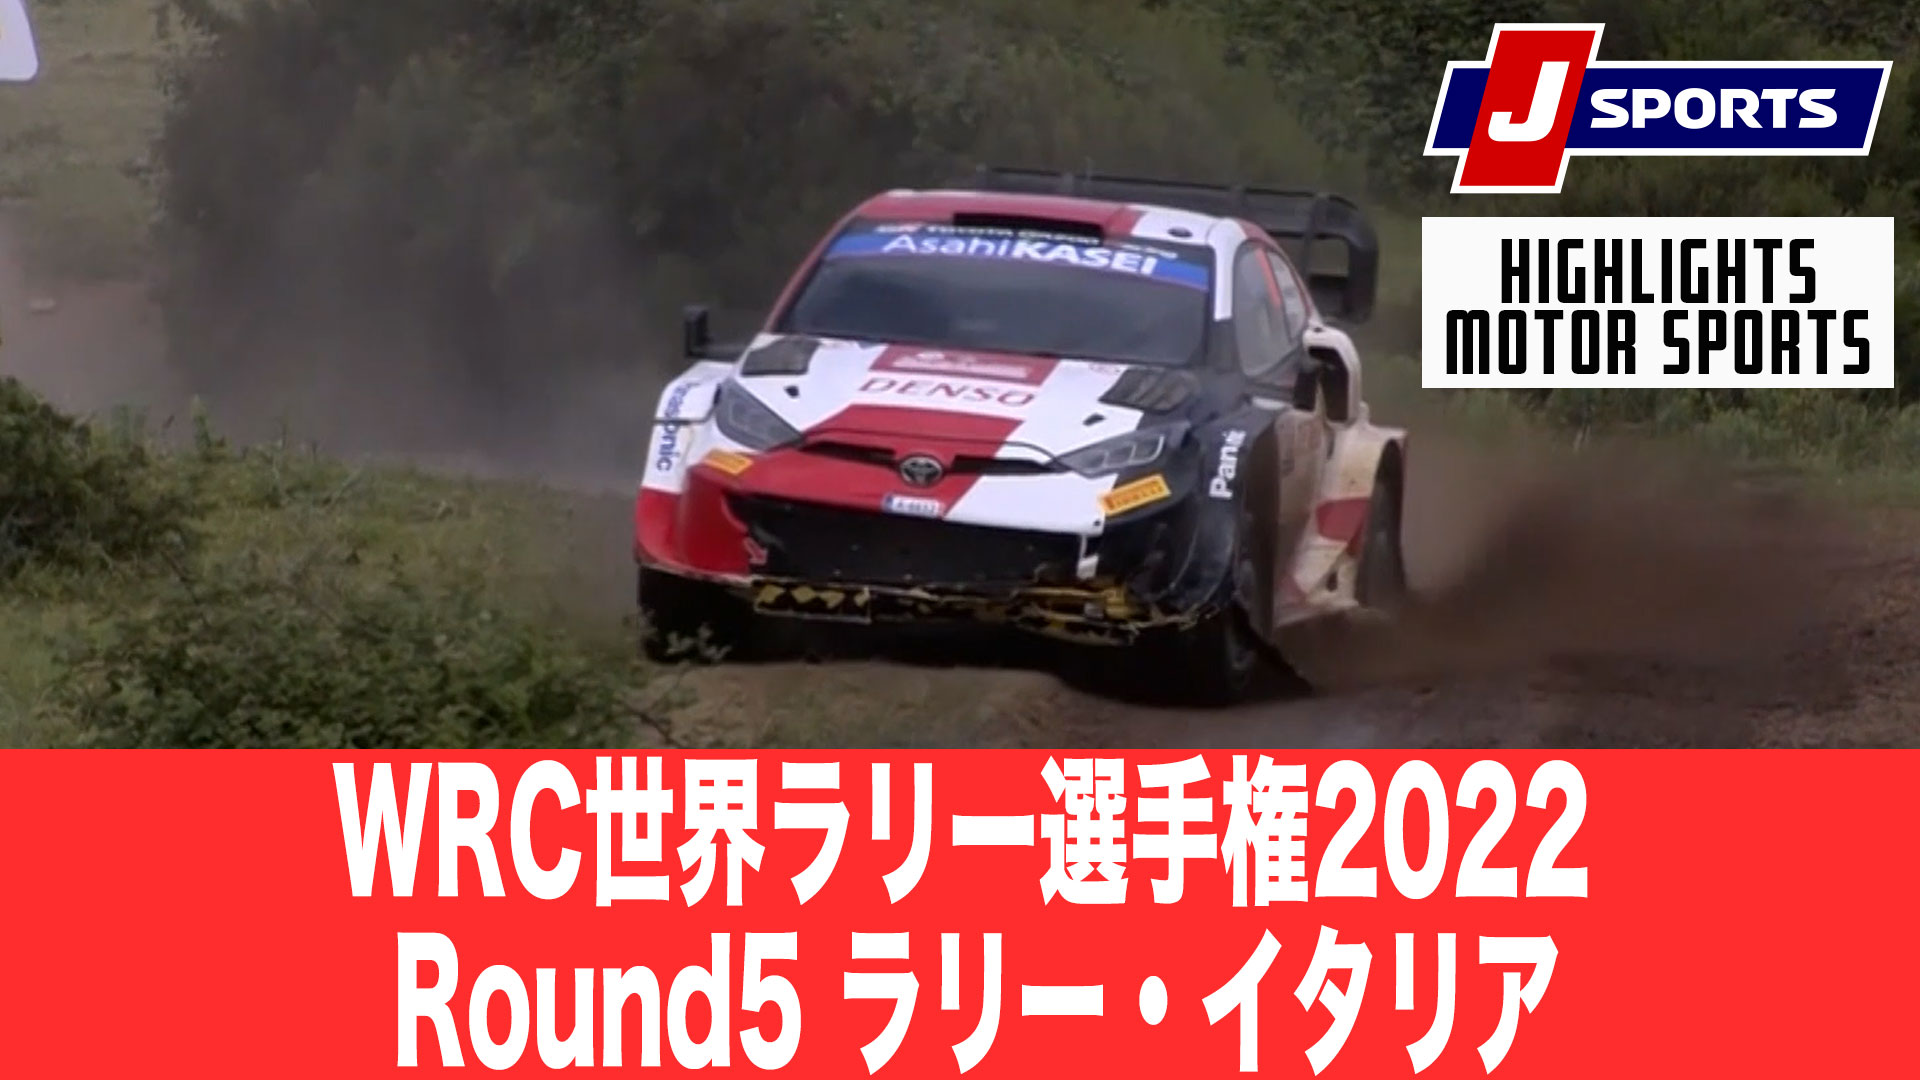 【ハイライト】WRC世界ラリー選手権2022 Round5 ラリー・イタリア